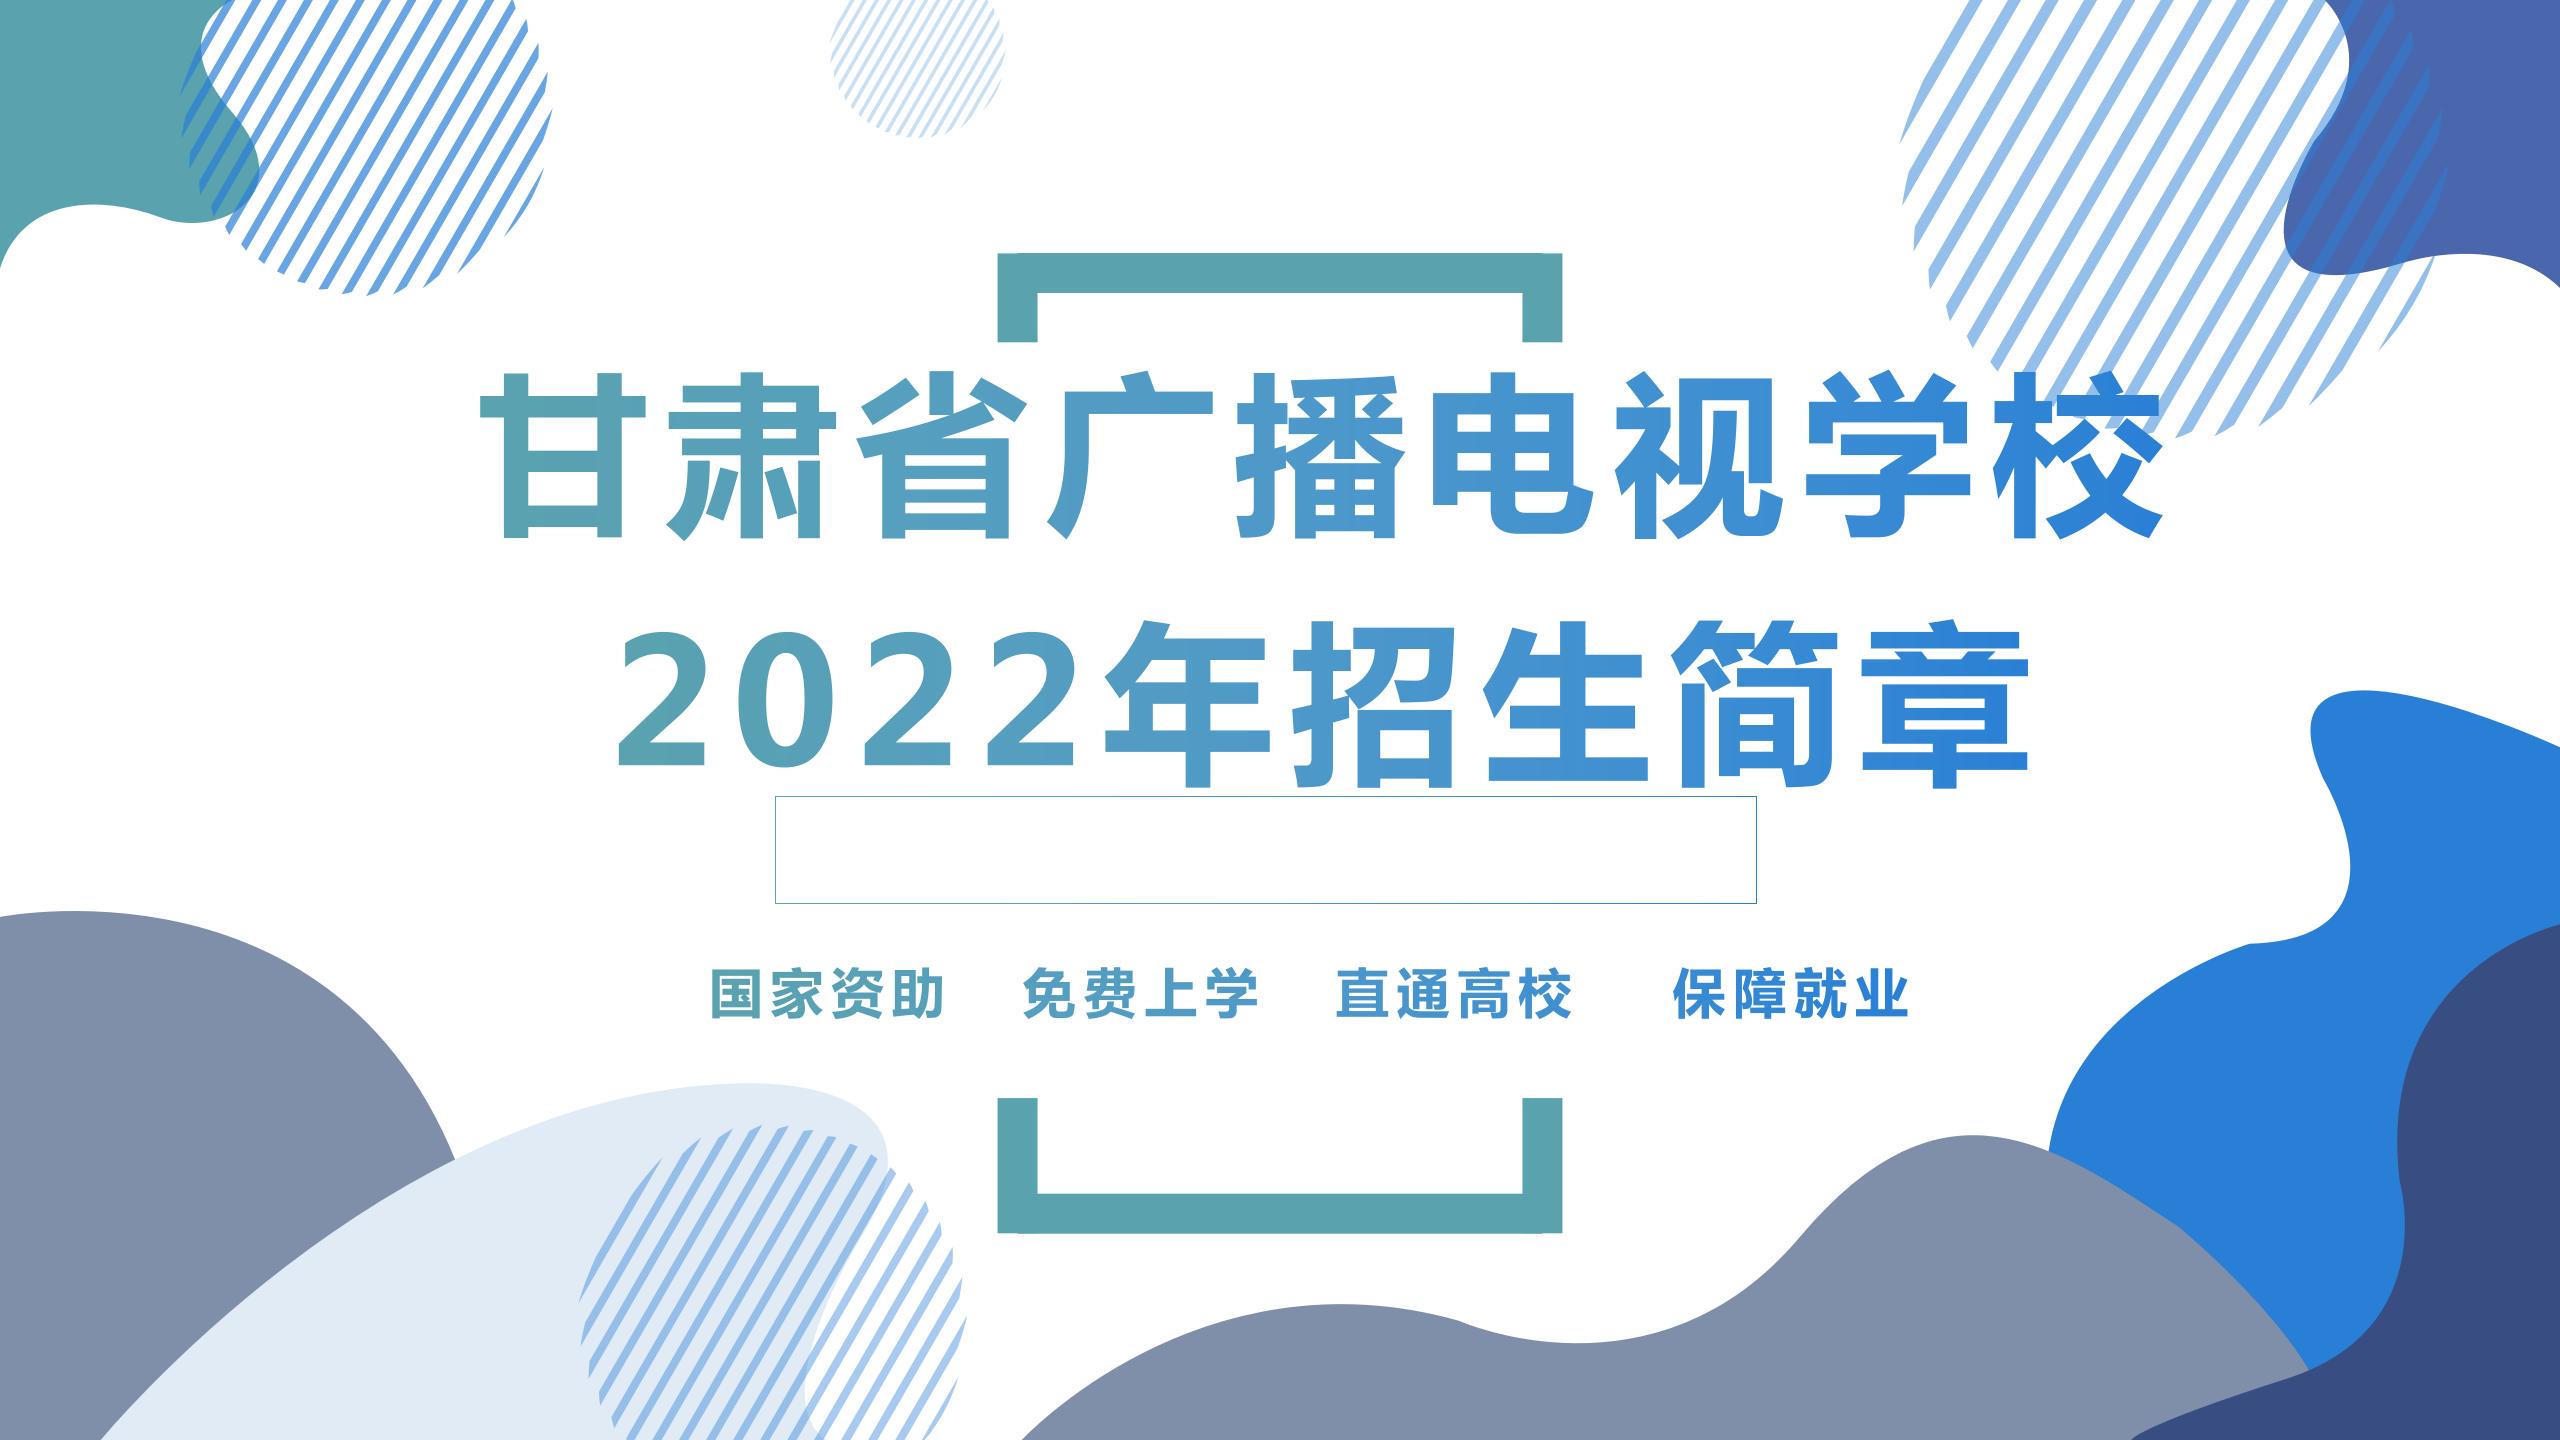 甘肃省广播电视学校2022年招生简章